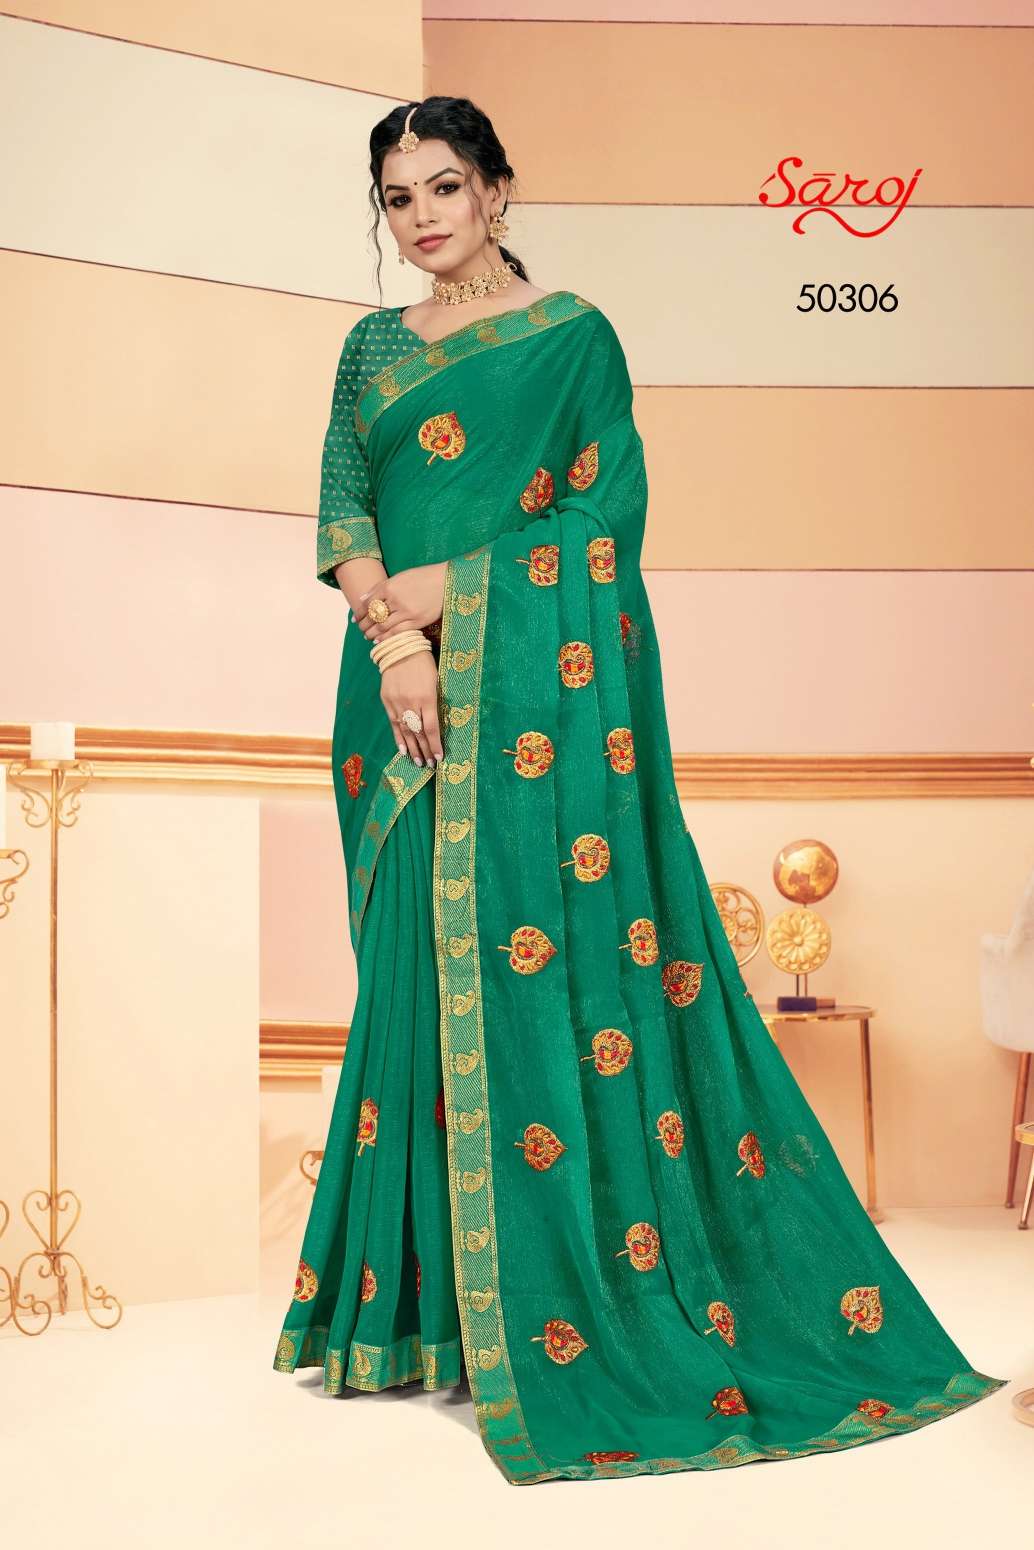 Saroj textile presents Shraddha vol-7 casual sarees catalogue